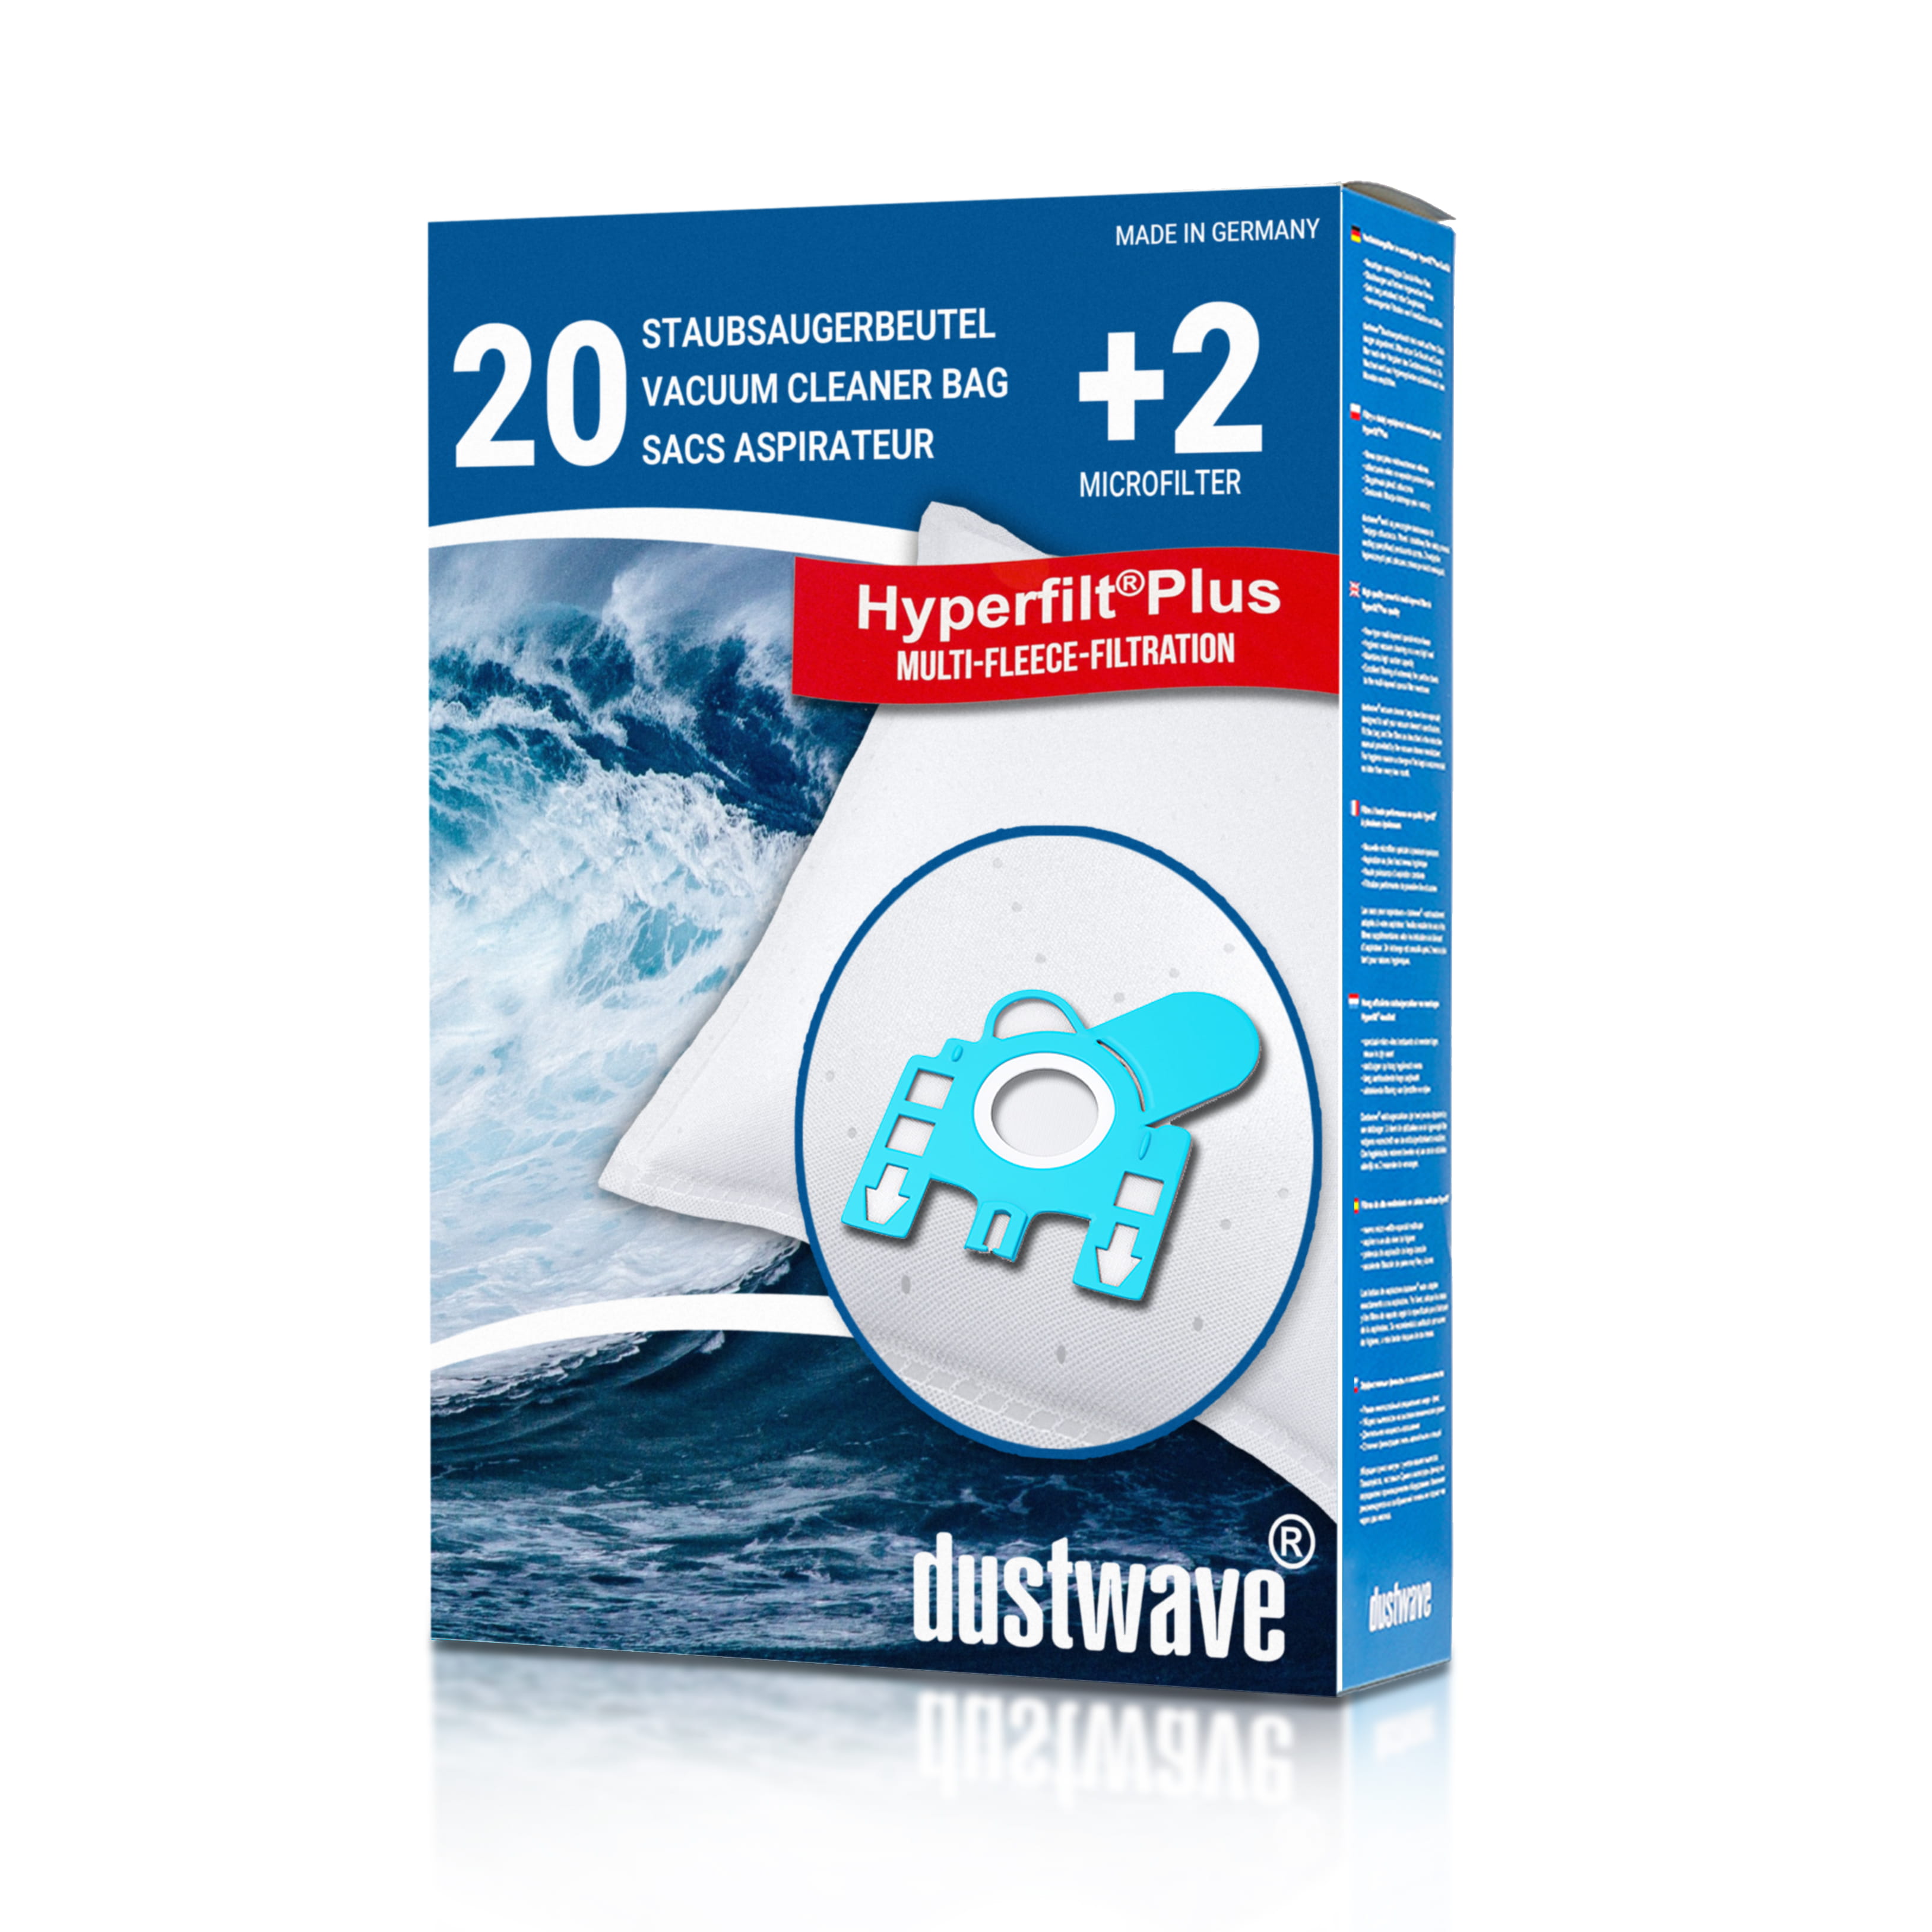 Dustwave® 20 Staubsaugerbeutel für Hoover TPP 2210 PurePower - hocheffizient, mehrlagiges Mikrovlies mit Hygieneverschluss - Made in Germany